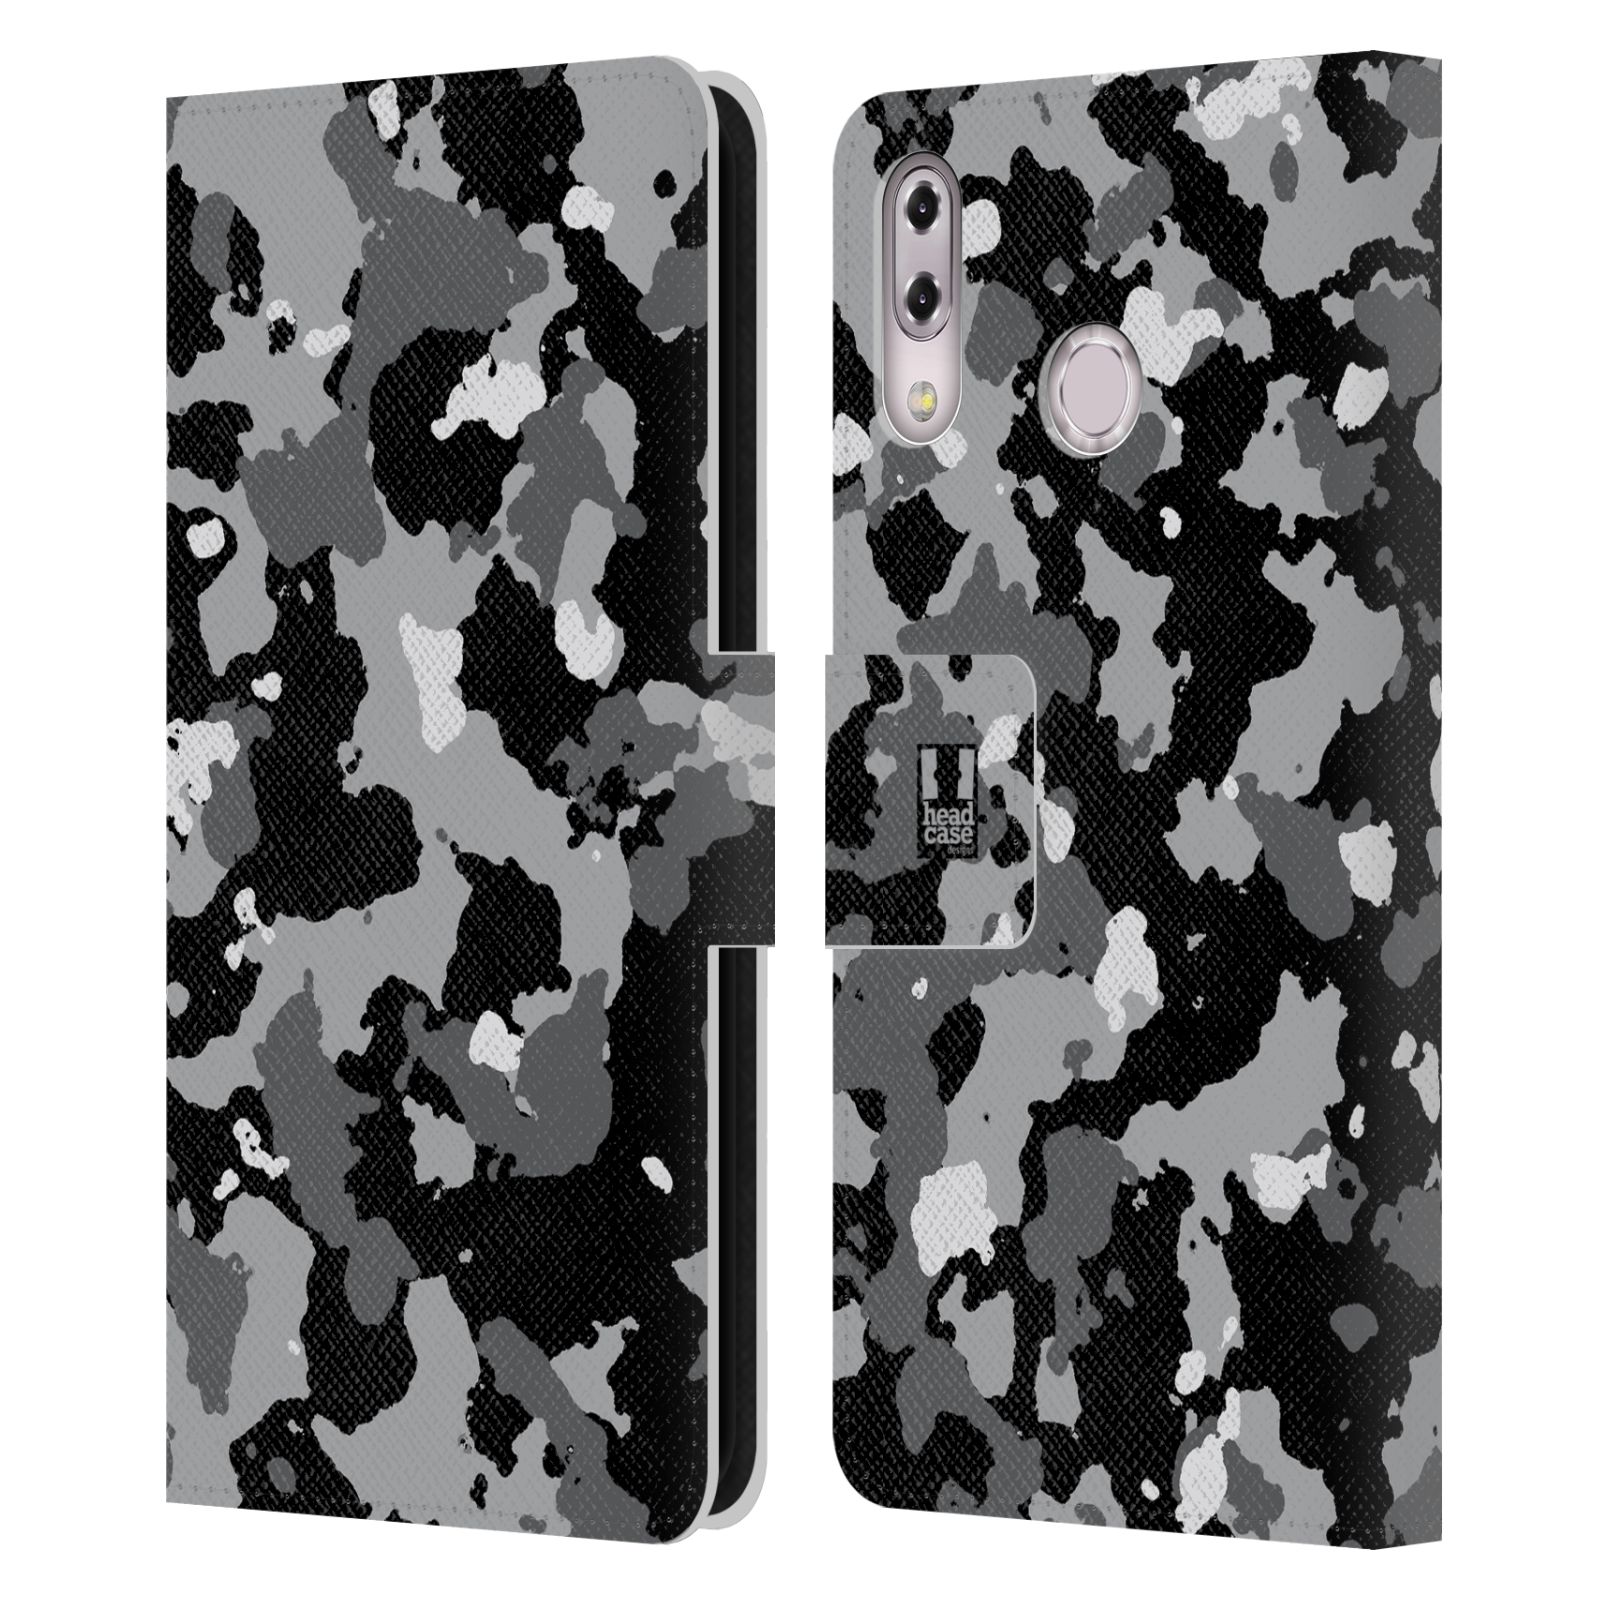 Pouzdro na mobil Asus Zenfone 5z ZS620KL / 5 ZE620KL - Head Case - kamuflaž černá a šedá